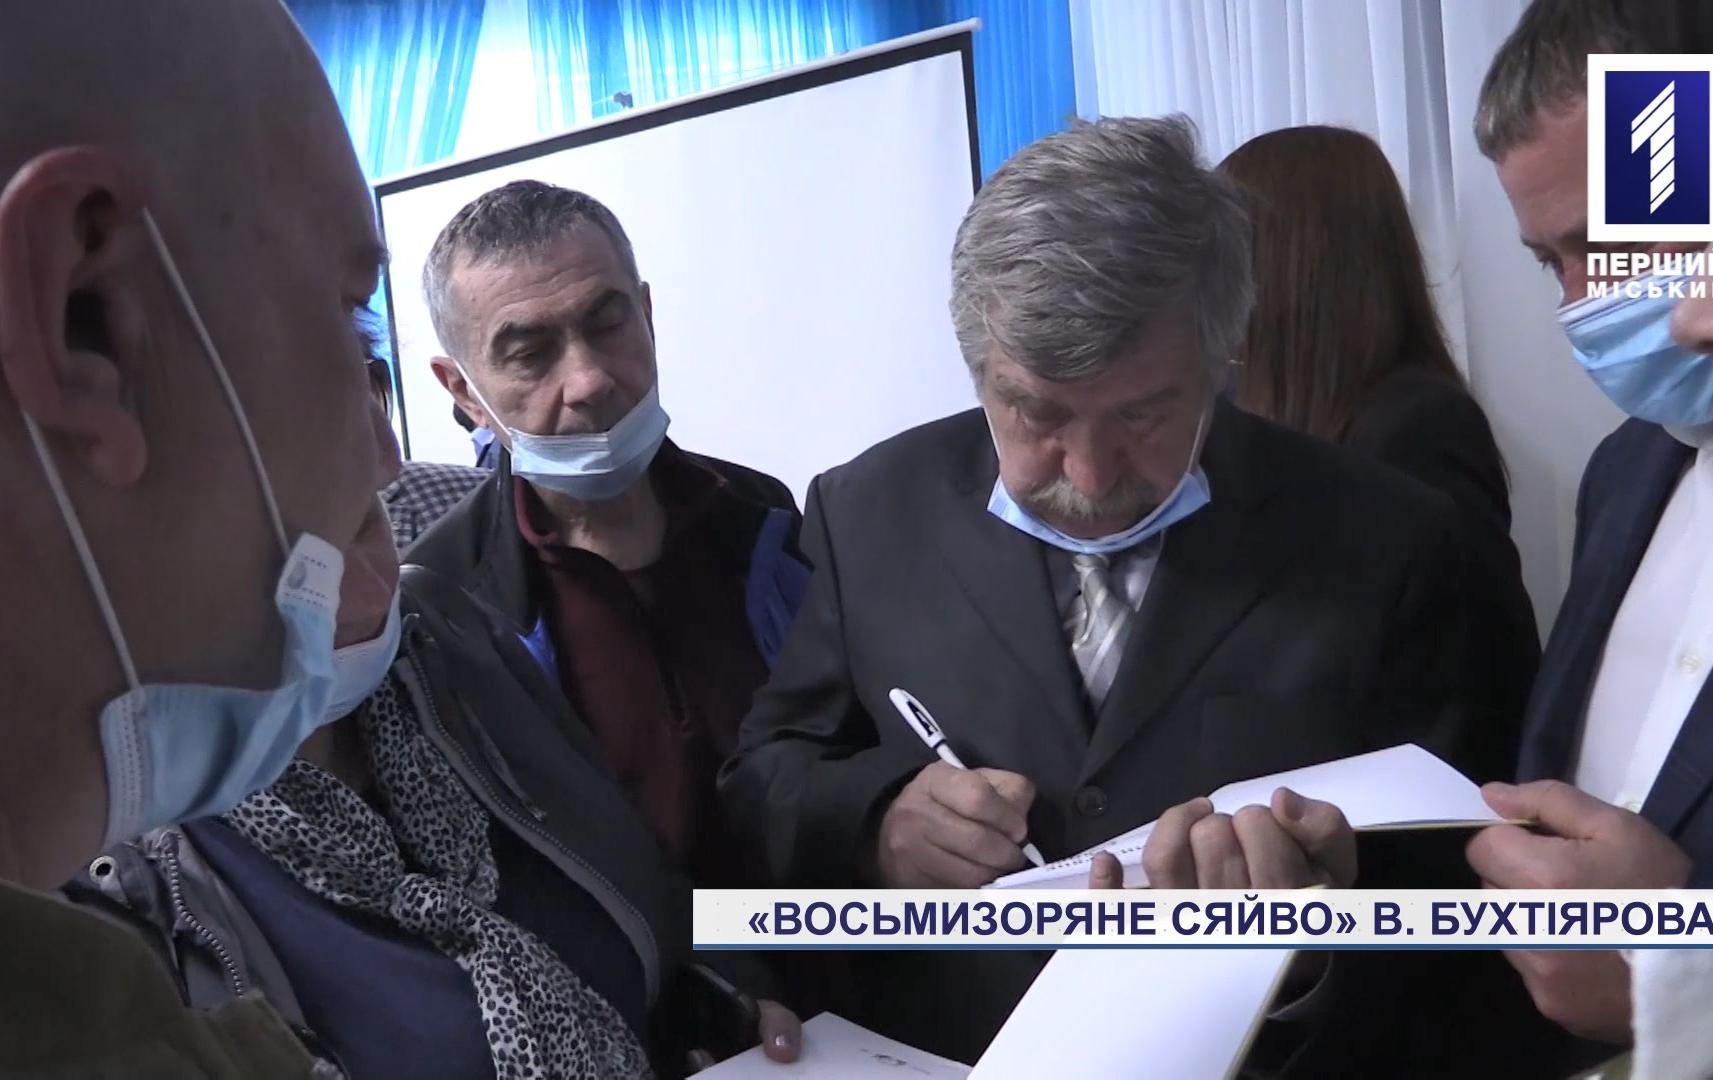 Володимир Бухтіяров презентував нову книжку «Восьмизоряне сяйво»